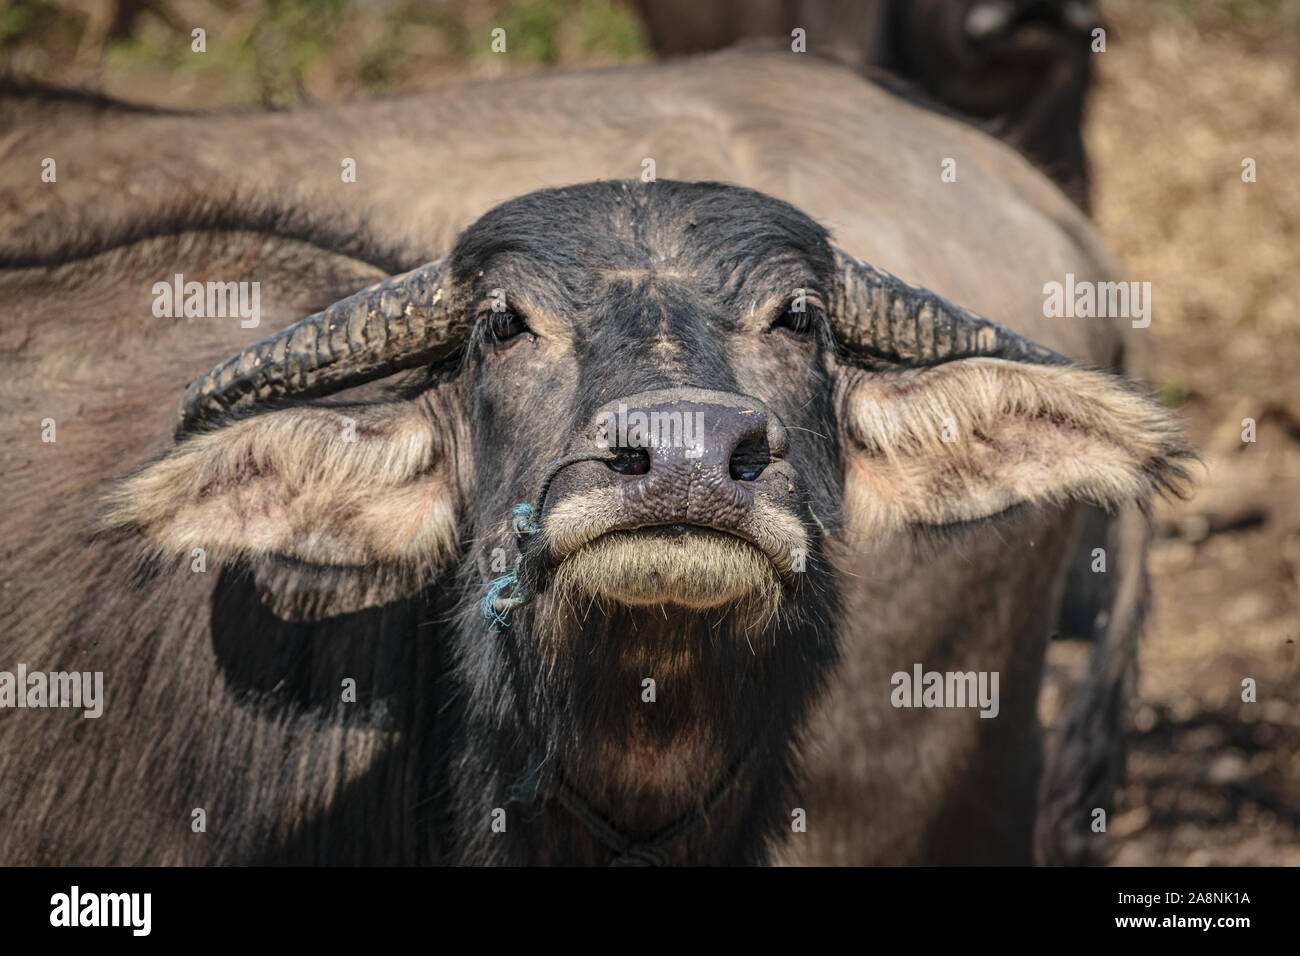 Water buffalo, Myanmar Stock Photo